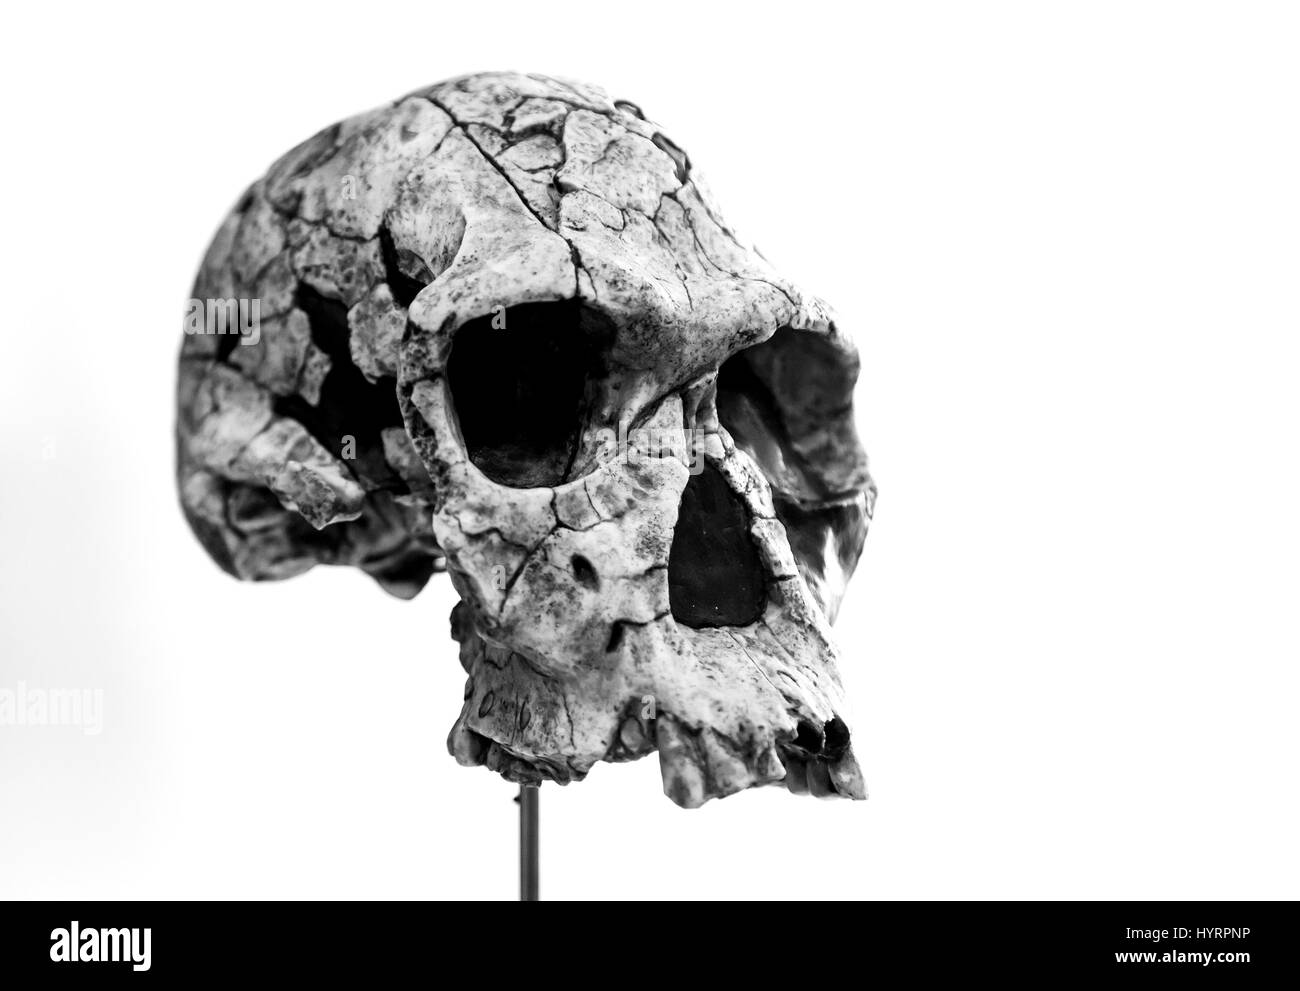 Des crânes humains préhistoriques, détail de l'histoire de l'humanité, de l'archéologie Banque D'Images